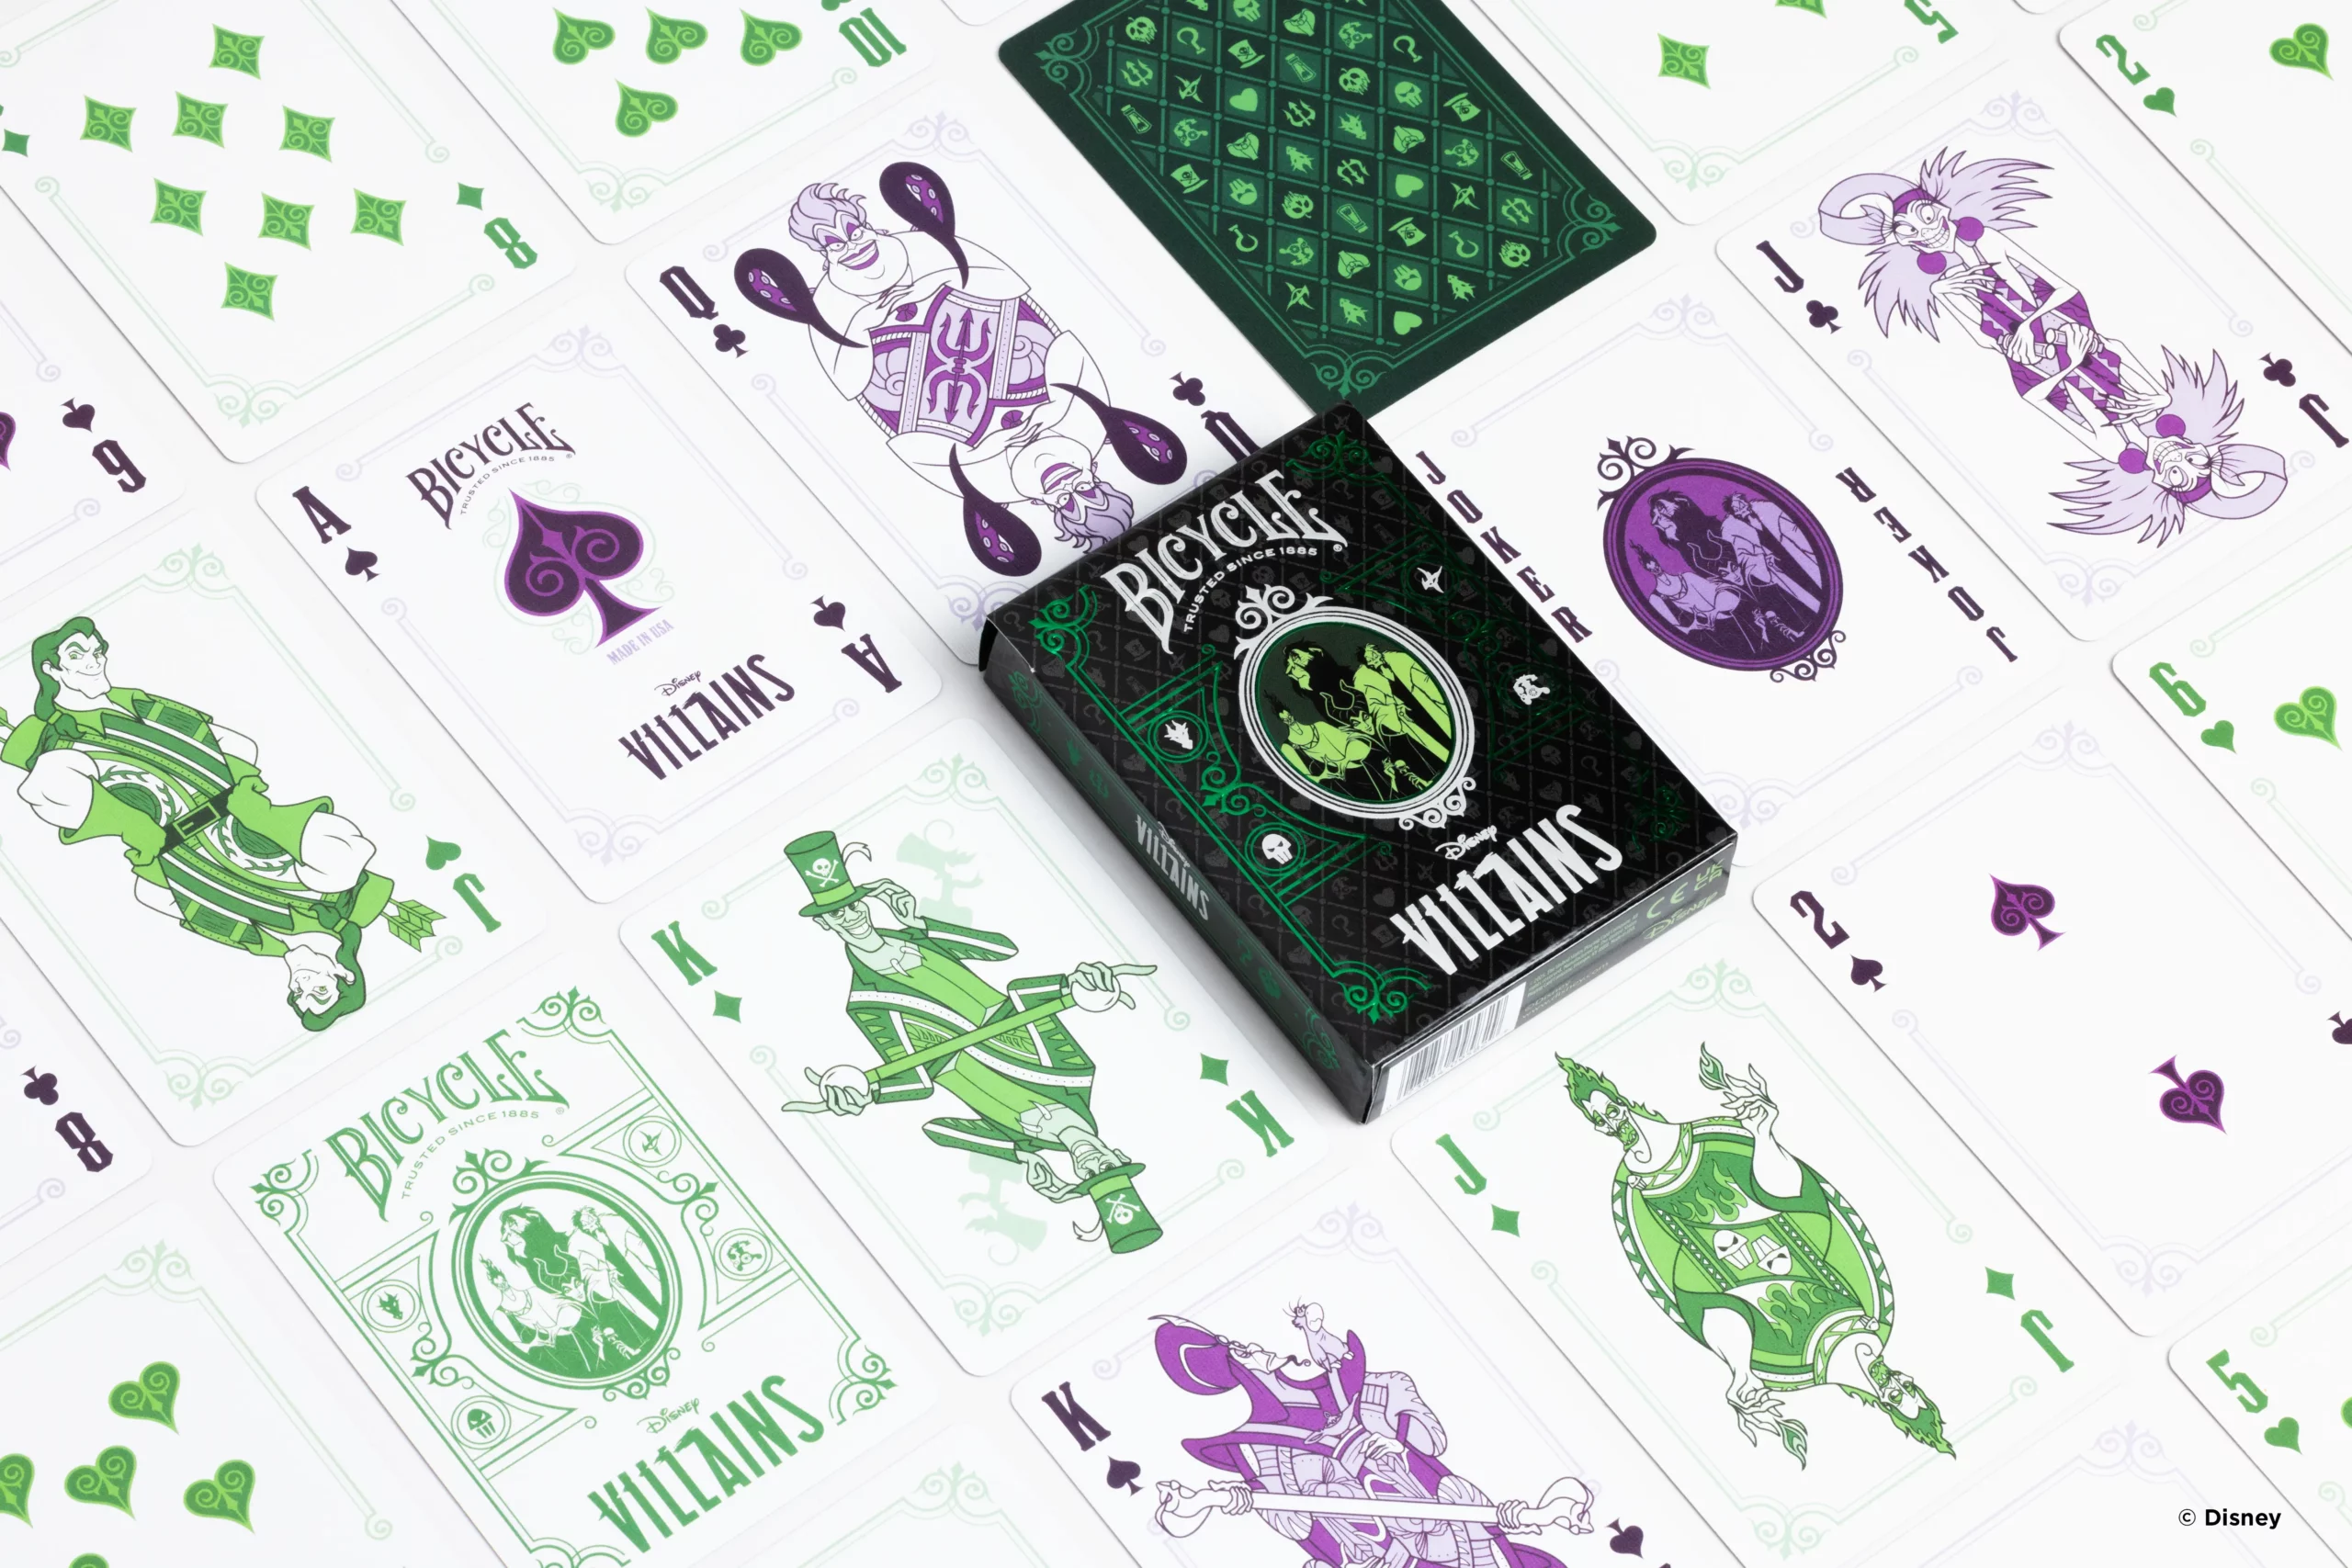 Die Karten einer Bicycle Creatives Bicycle Disney Villains green grün Kartenschachtel liegen ausgebreitet auf einer Fläche sodass man verschieden Vorderseiten und Rückseiten und die Schachtel sehen kann.